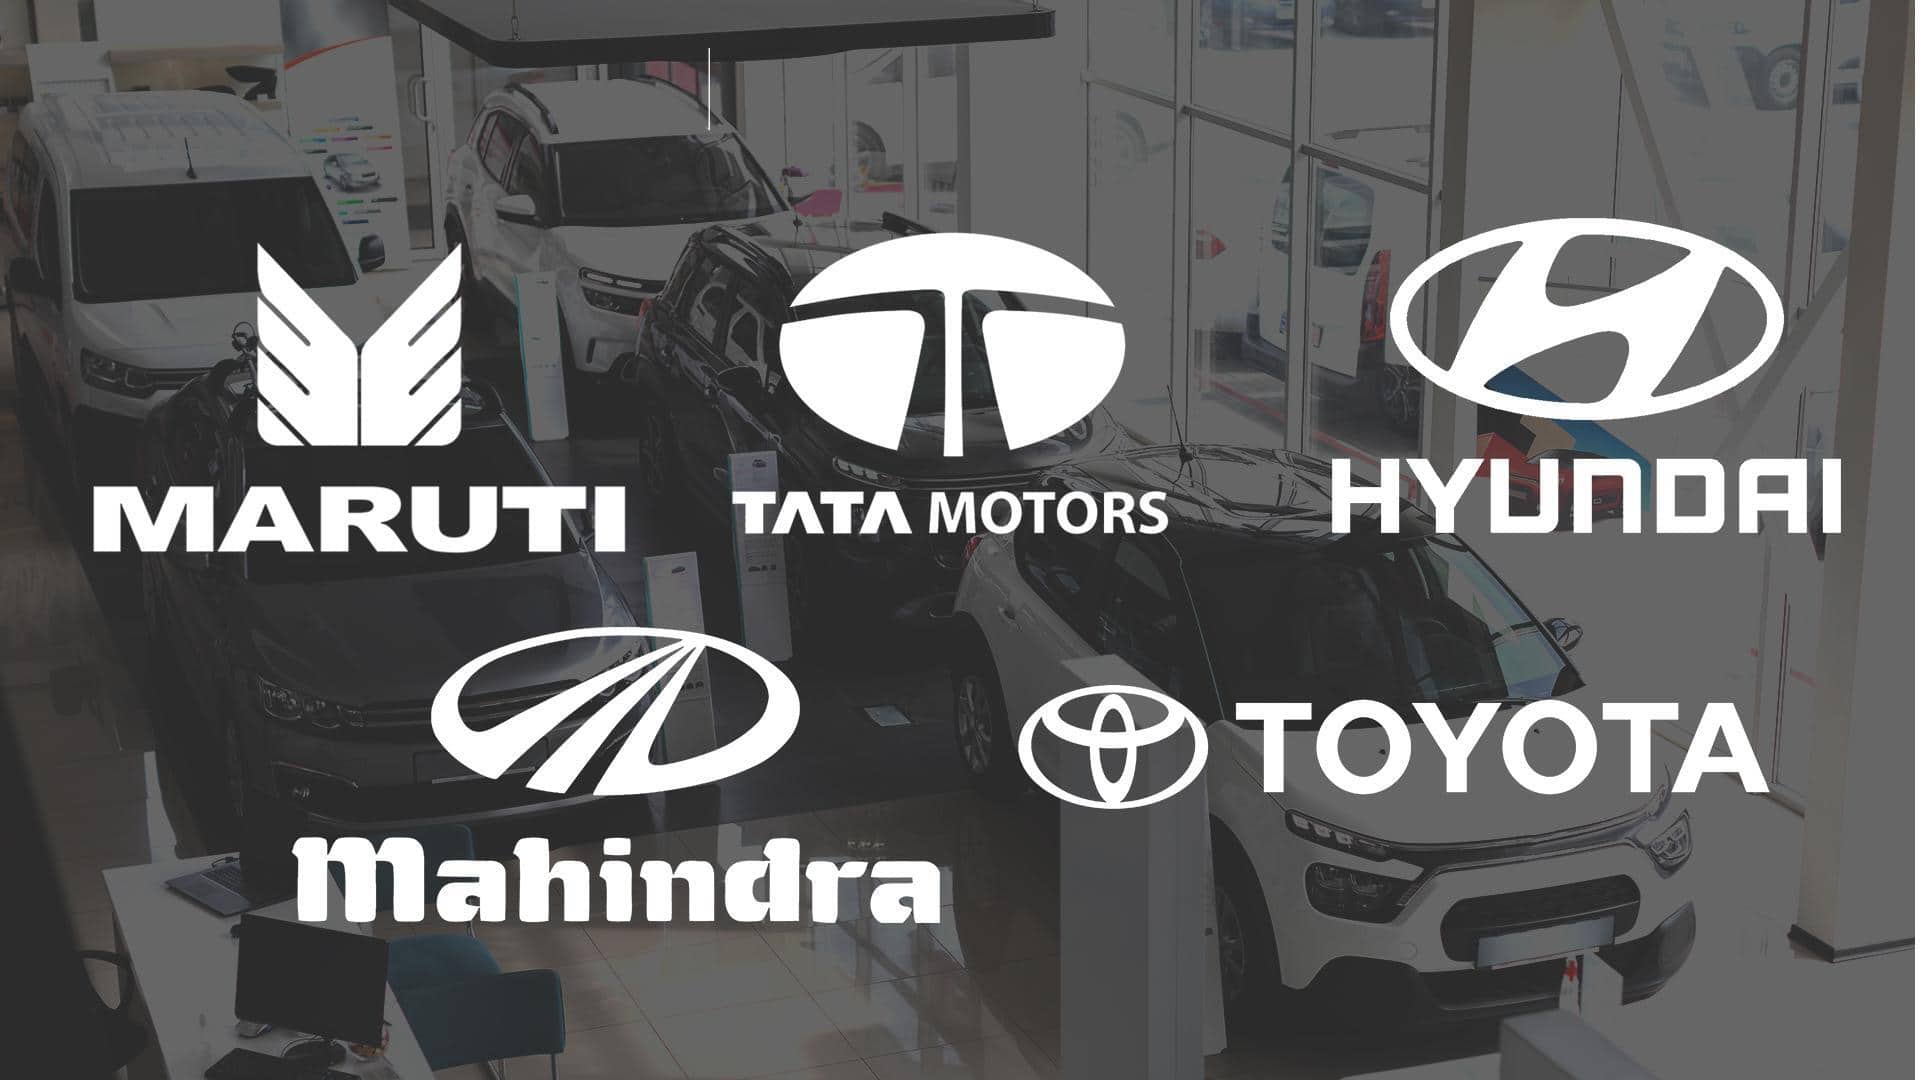 मारुति सुजुकी से लेकर टोयोटा तक, पिछले महीने इन 5 कंपनियों ने बेची सबसे अधिक गाड़ियां